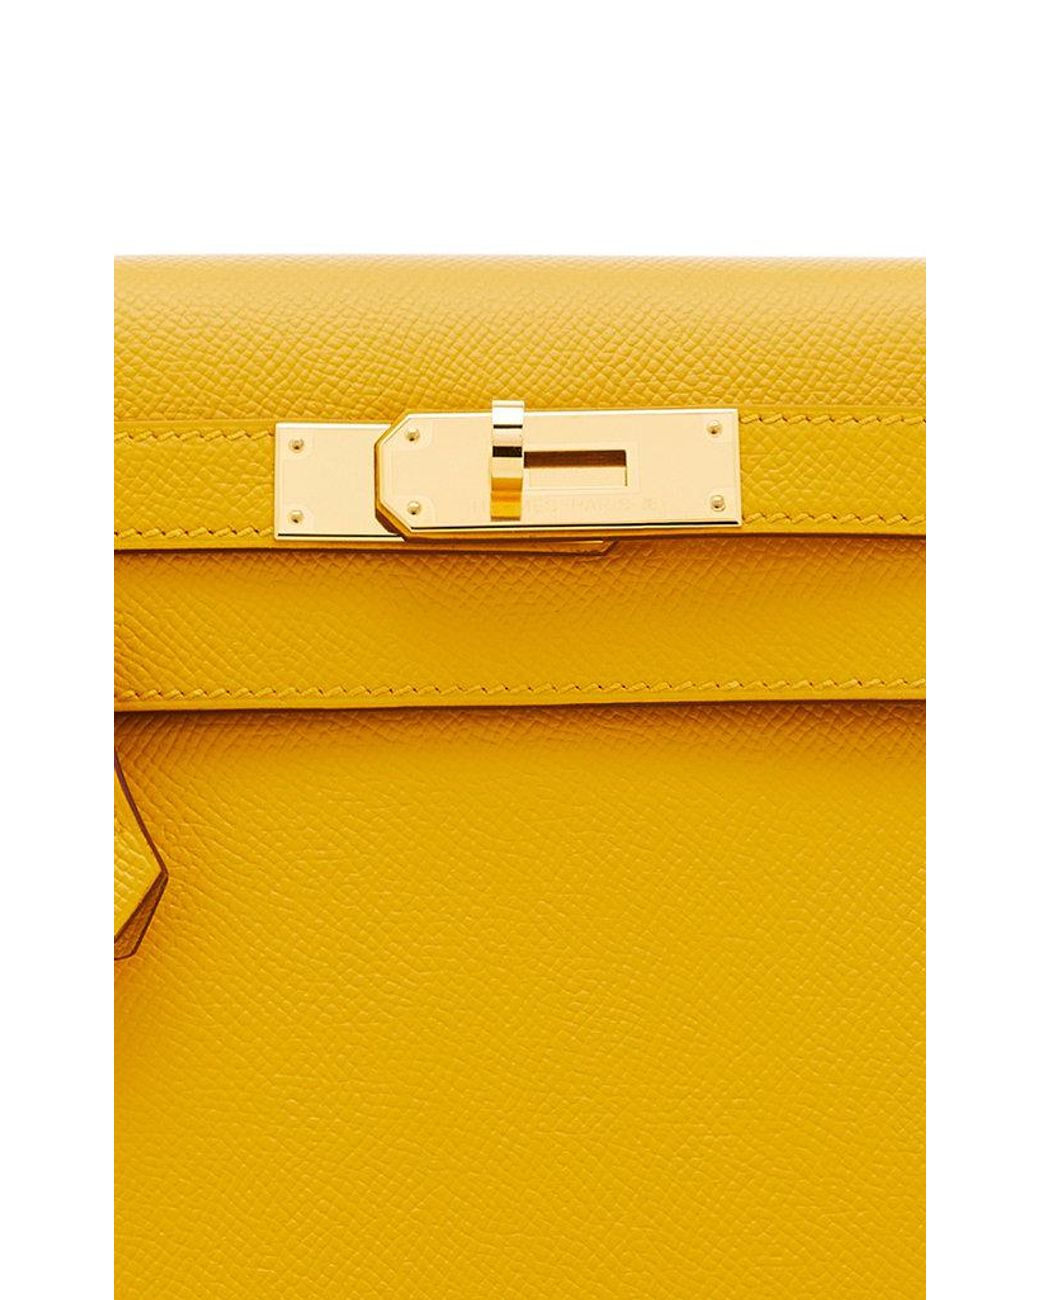 Hermès Kelly 28 Jaune Ambre/Malachite Sellier Epsom Gold Hardware